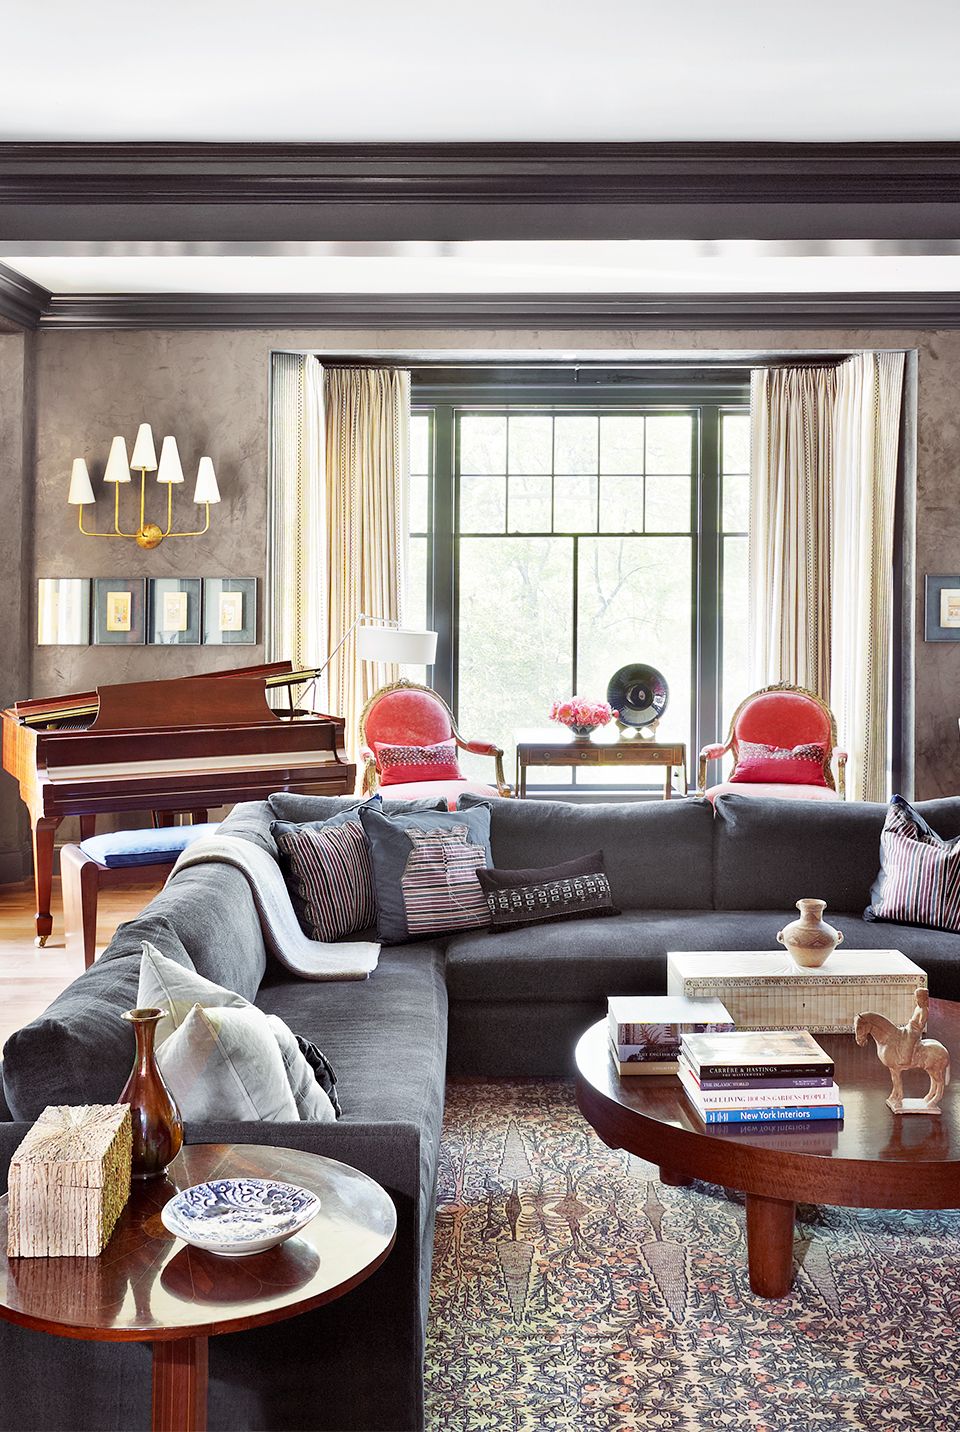 28 Cozy Living Room Decor Ideas To Copy - Society19